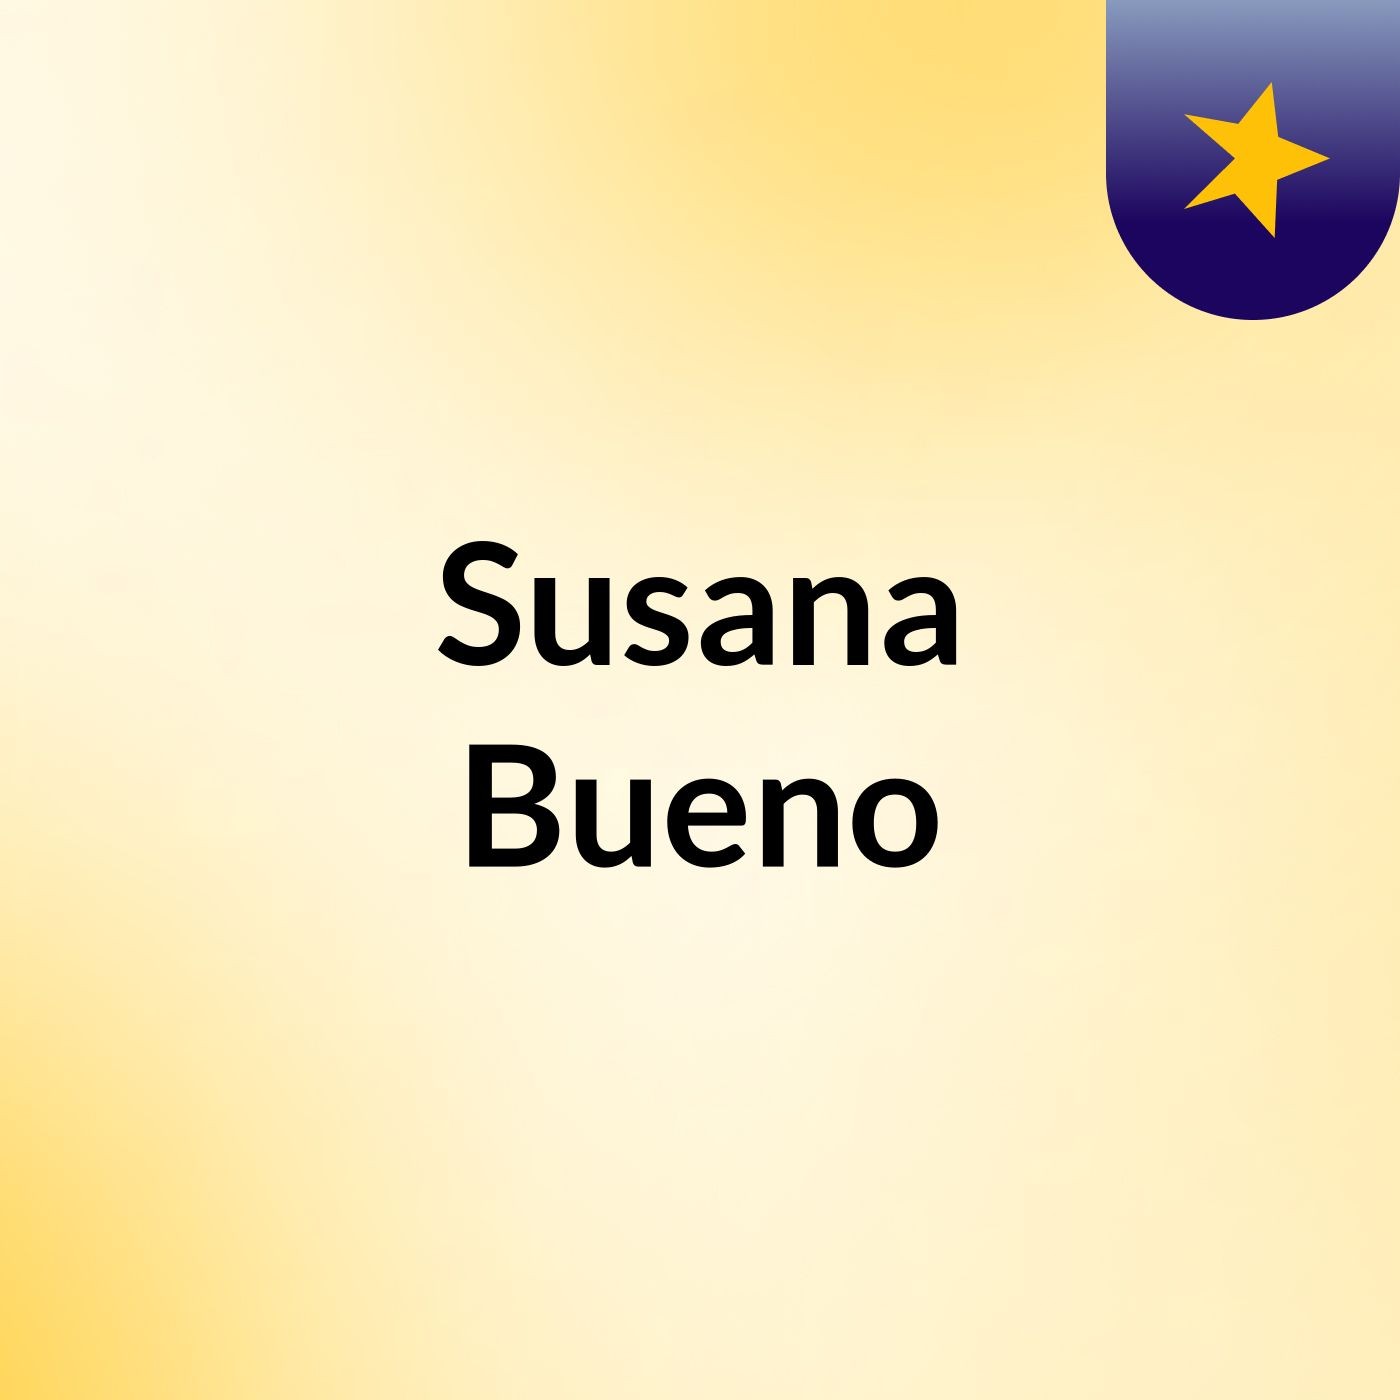 Susana Bueno